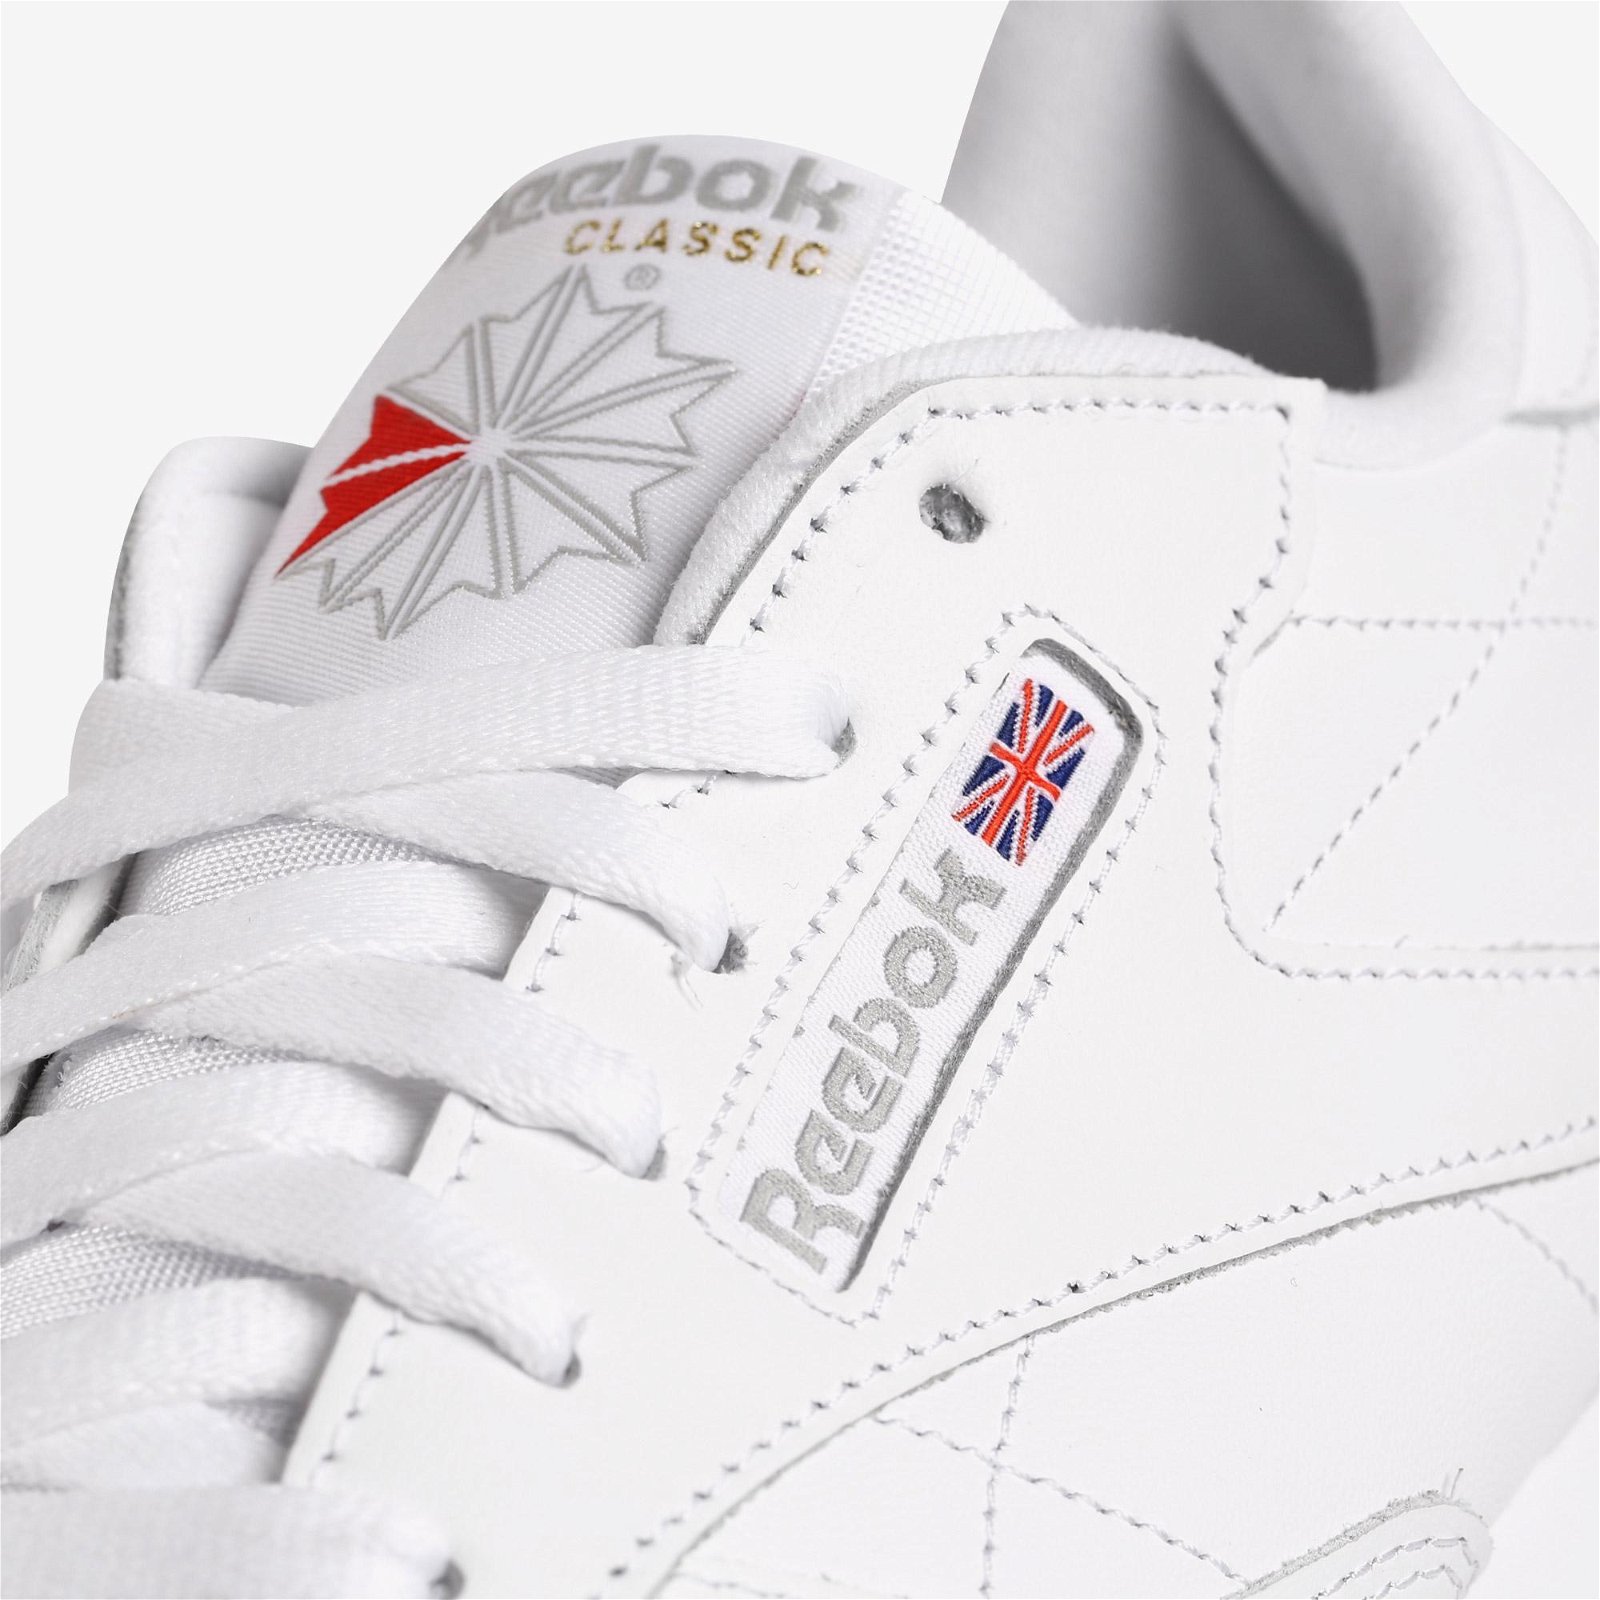 Reebok Classic Leather Beyaz Spor Ayakkabı